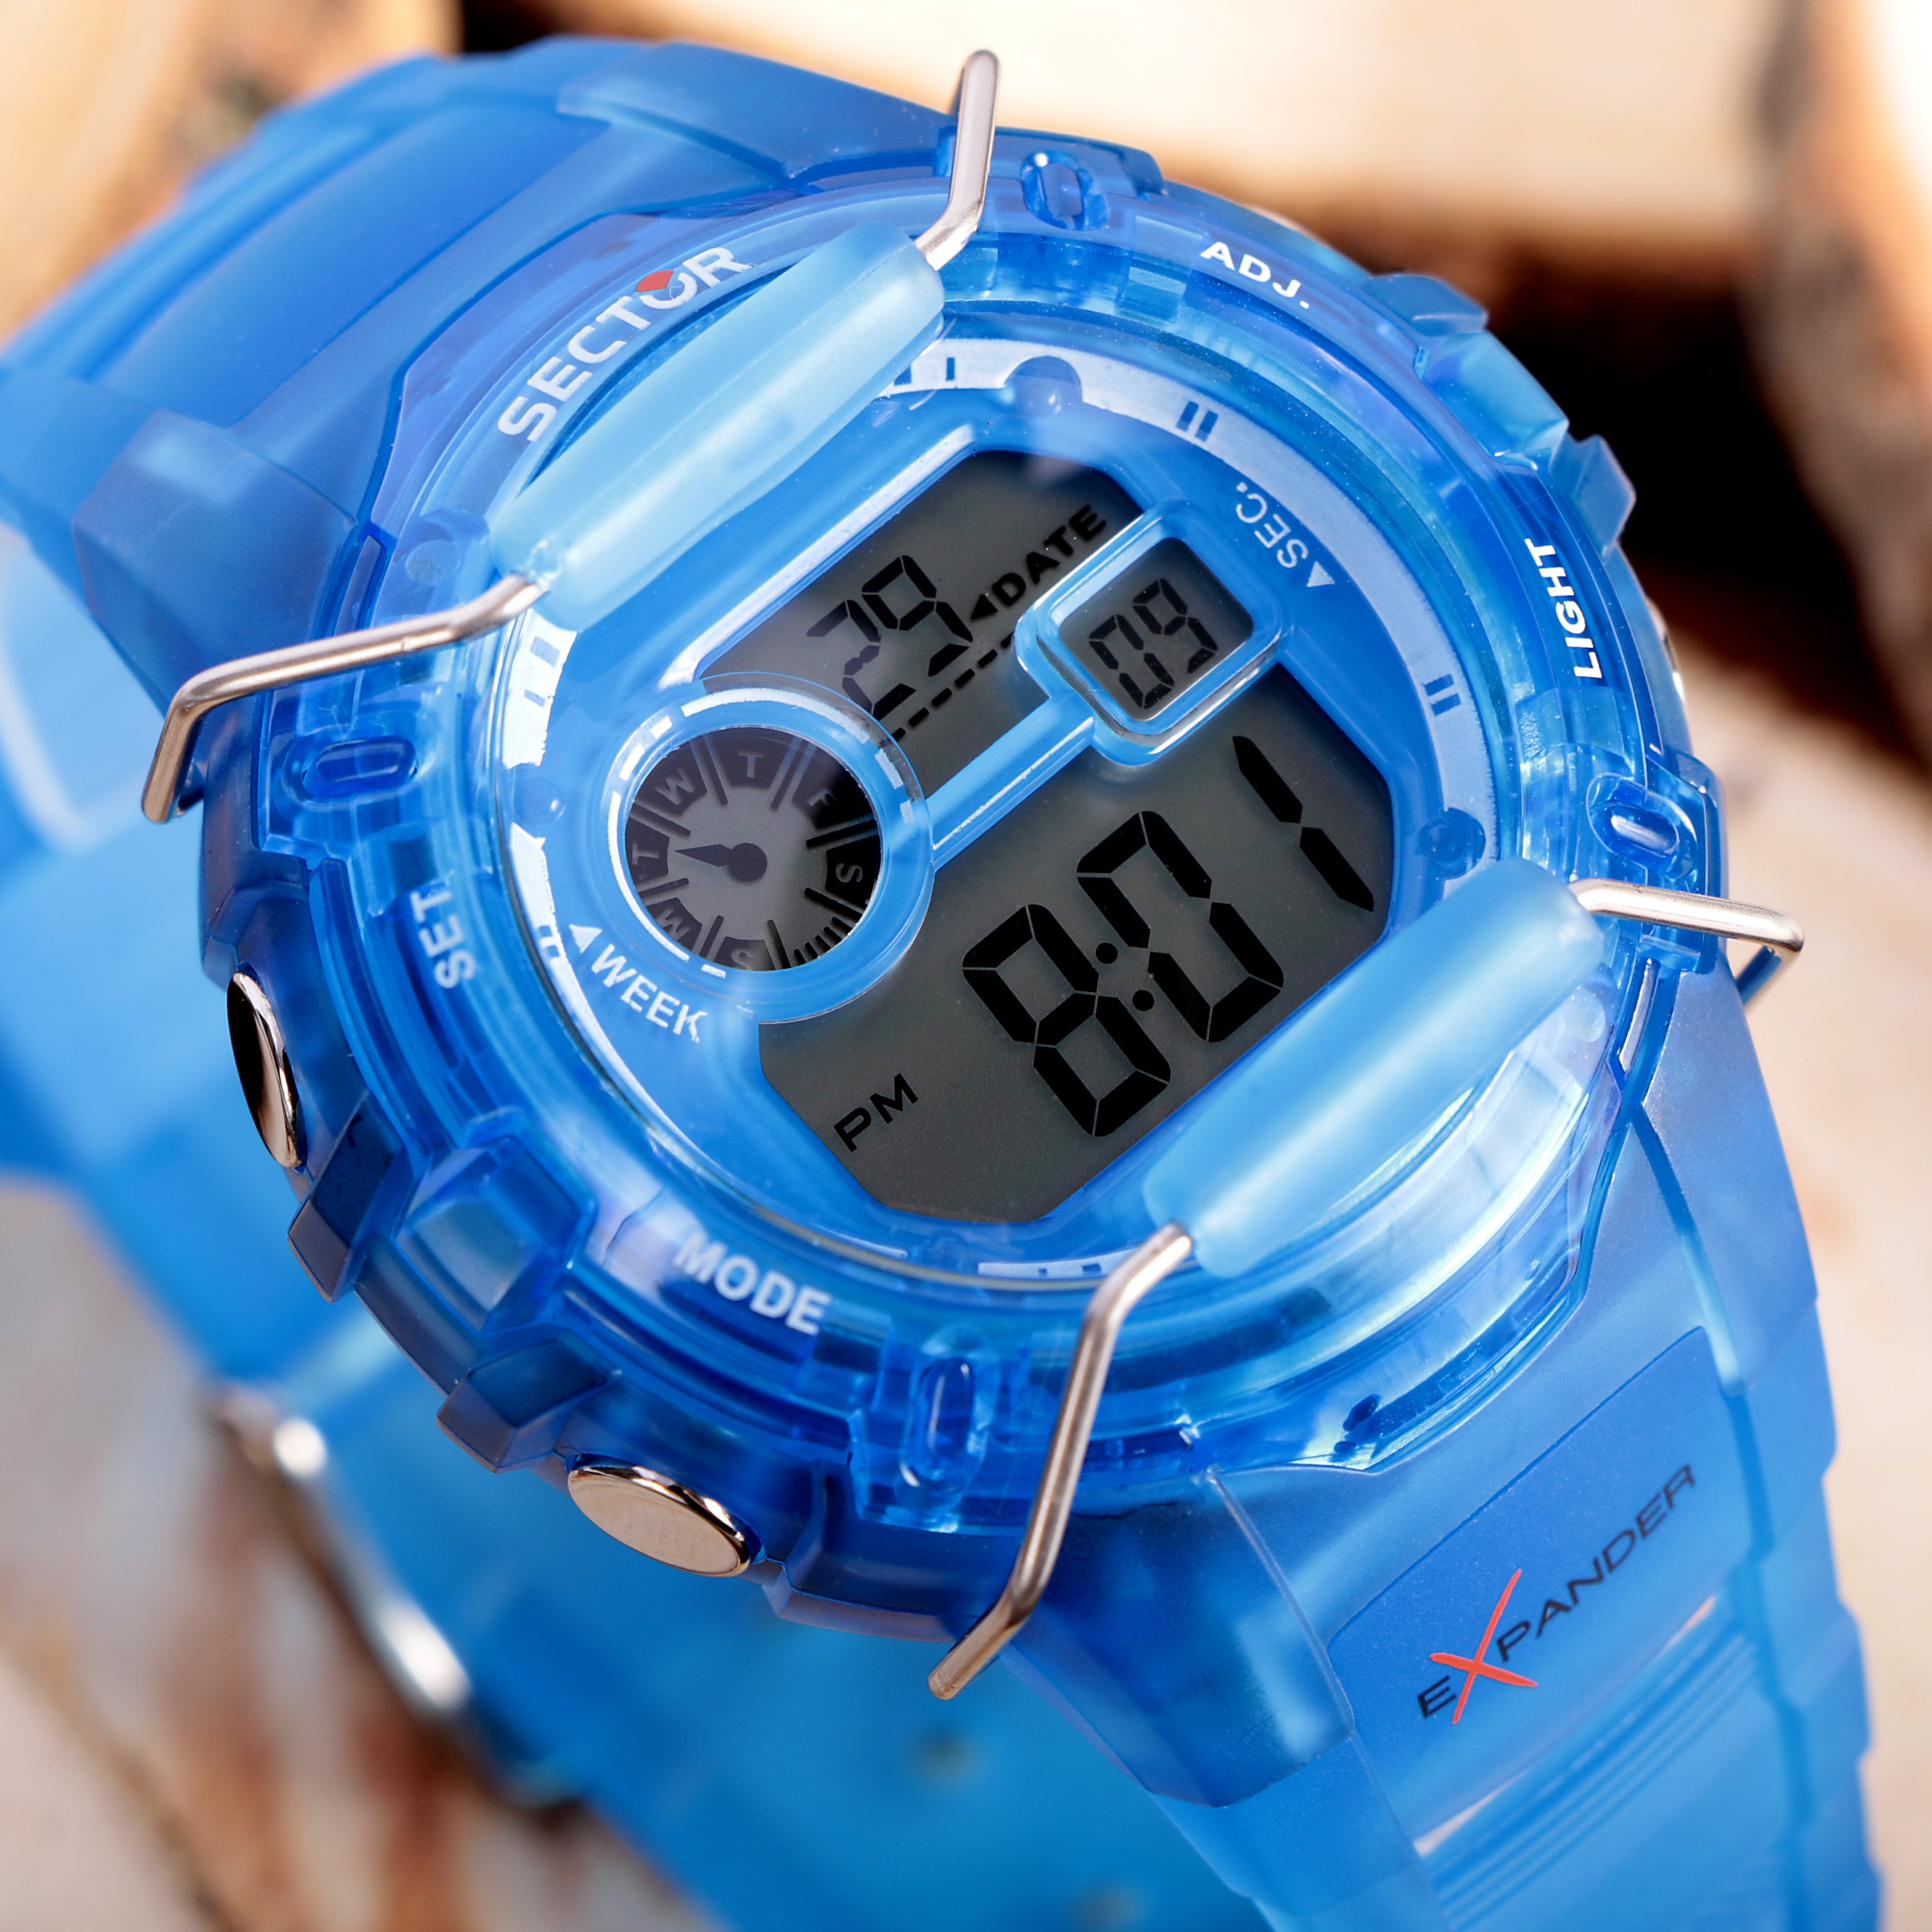 EX-05 Blue Digital Watch